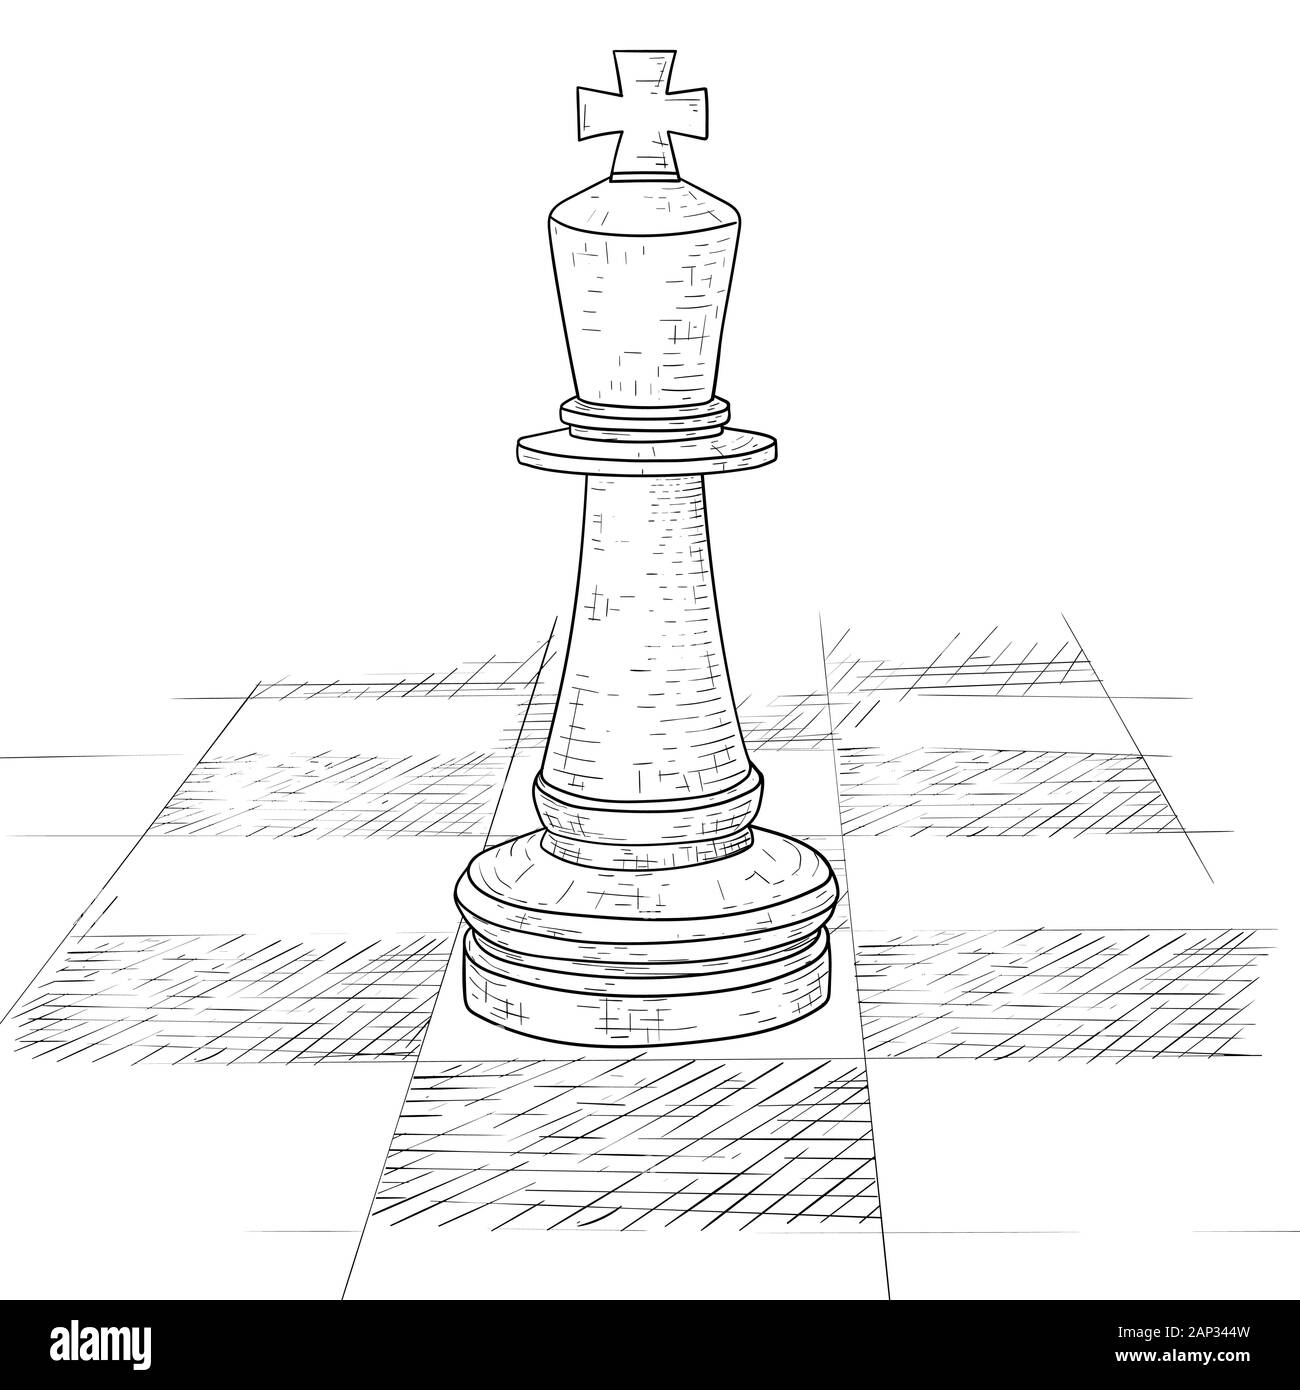 Der König Schach Stück auf einem Schachbrett. Hand Skizze gezeichnet Stock Vektor